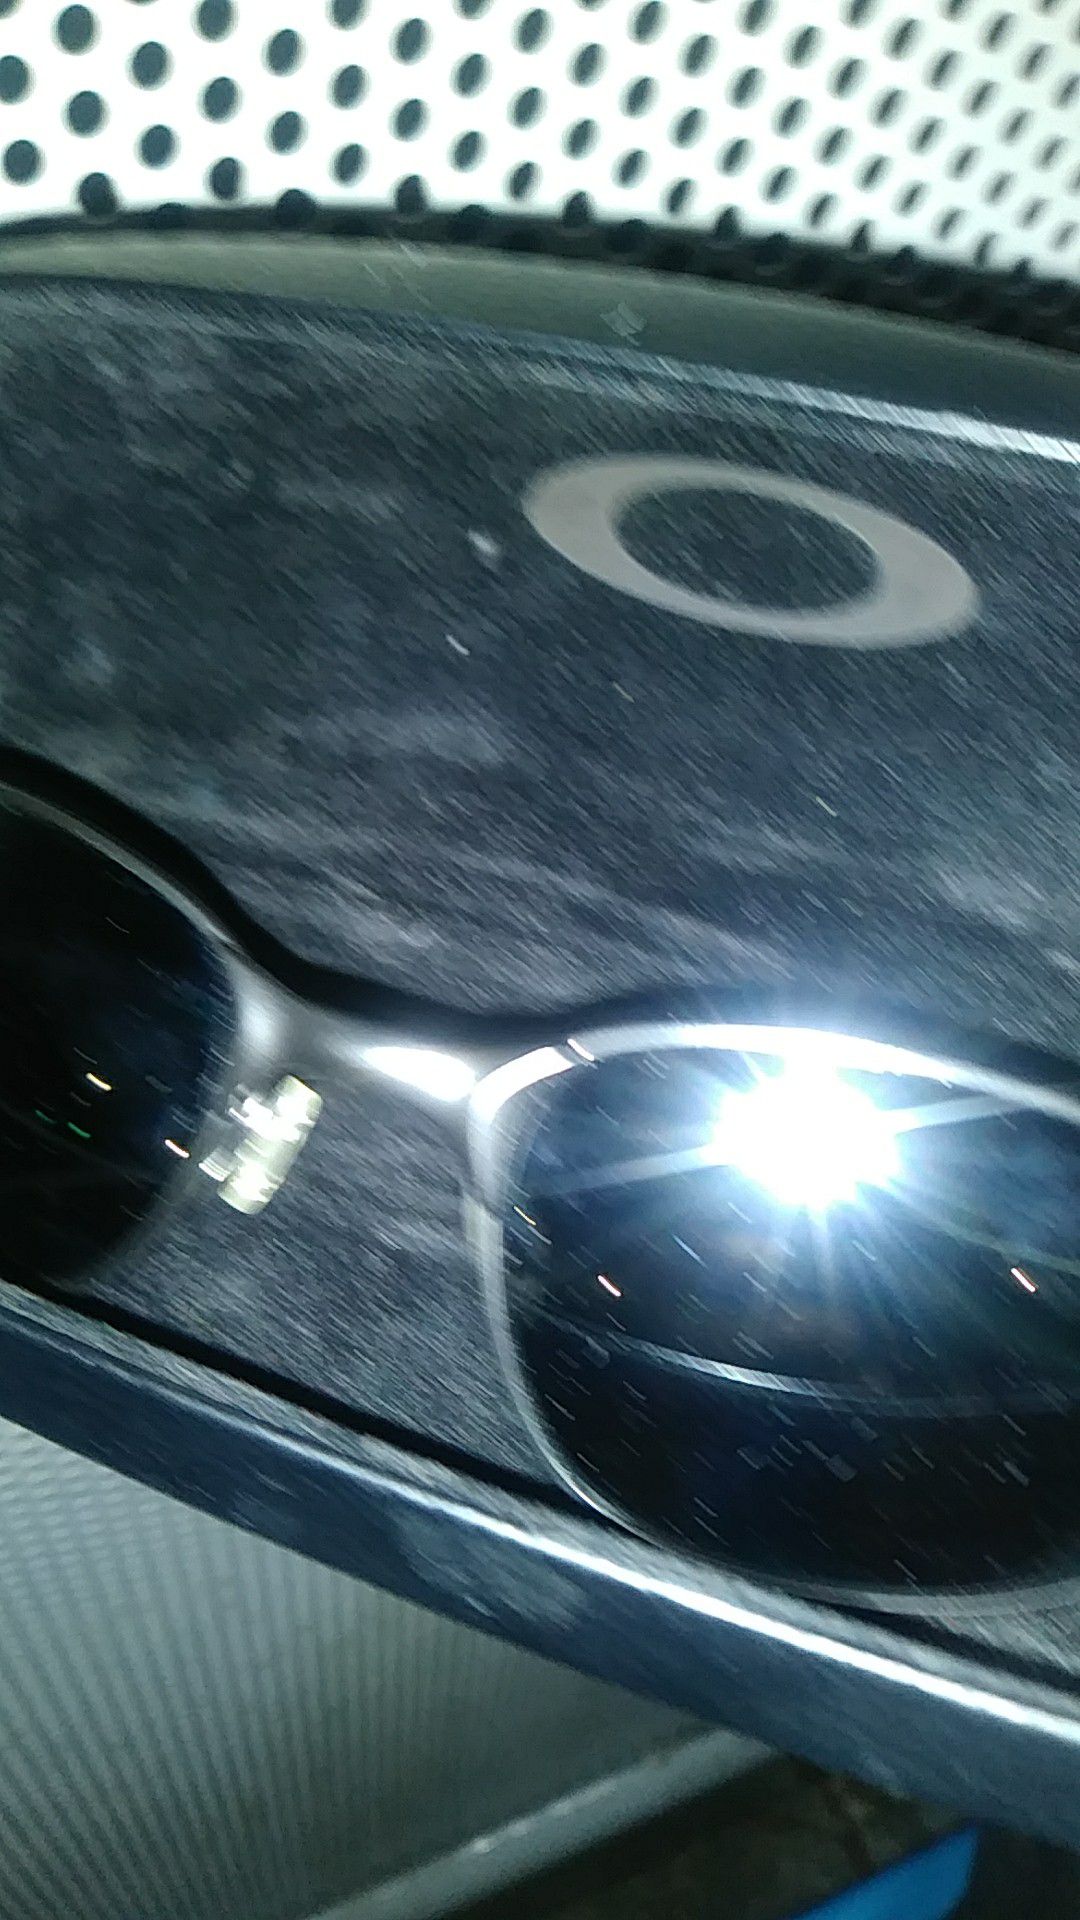 Oakley square sunglasses